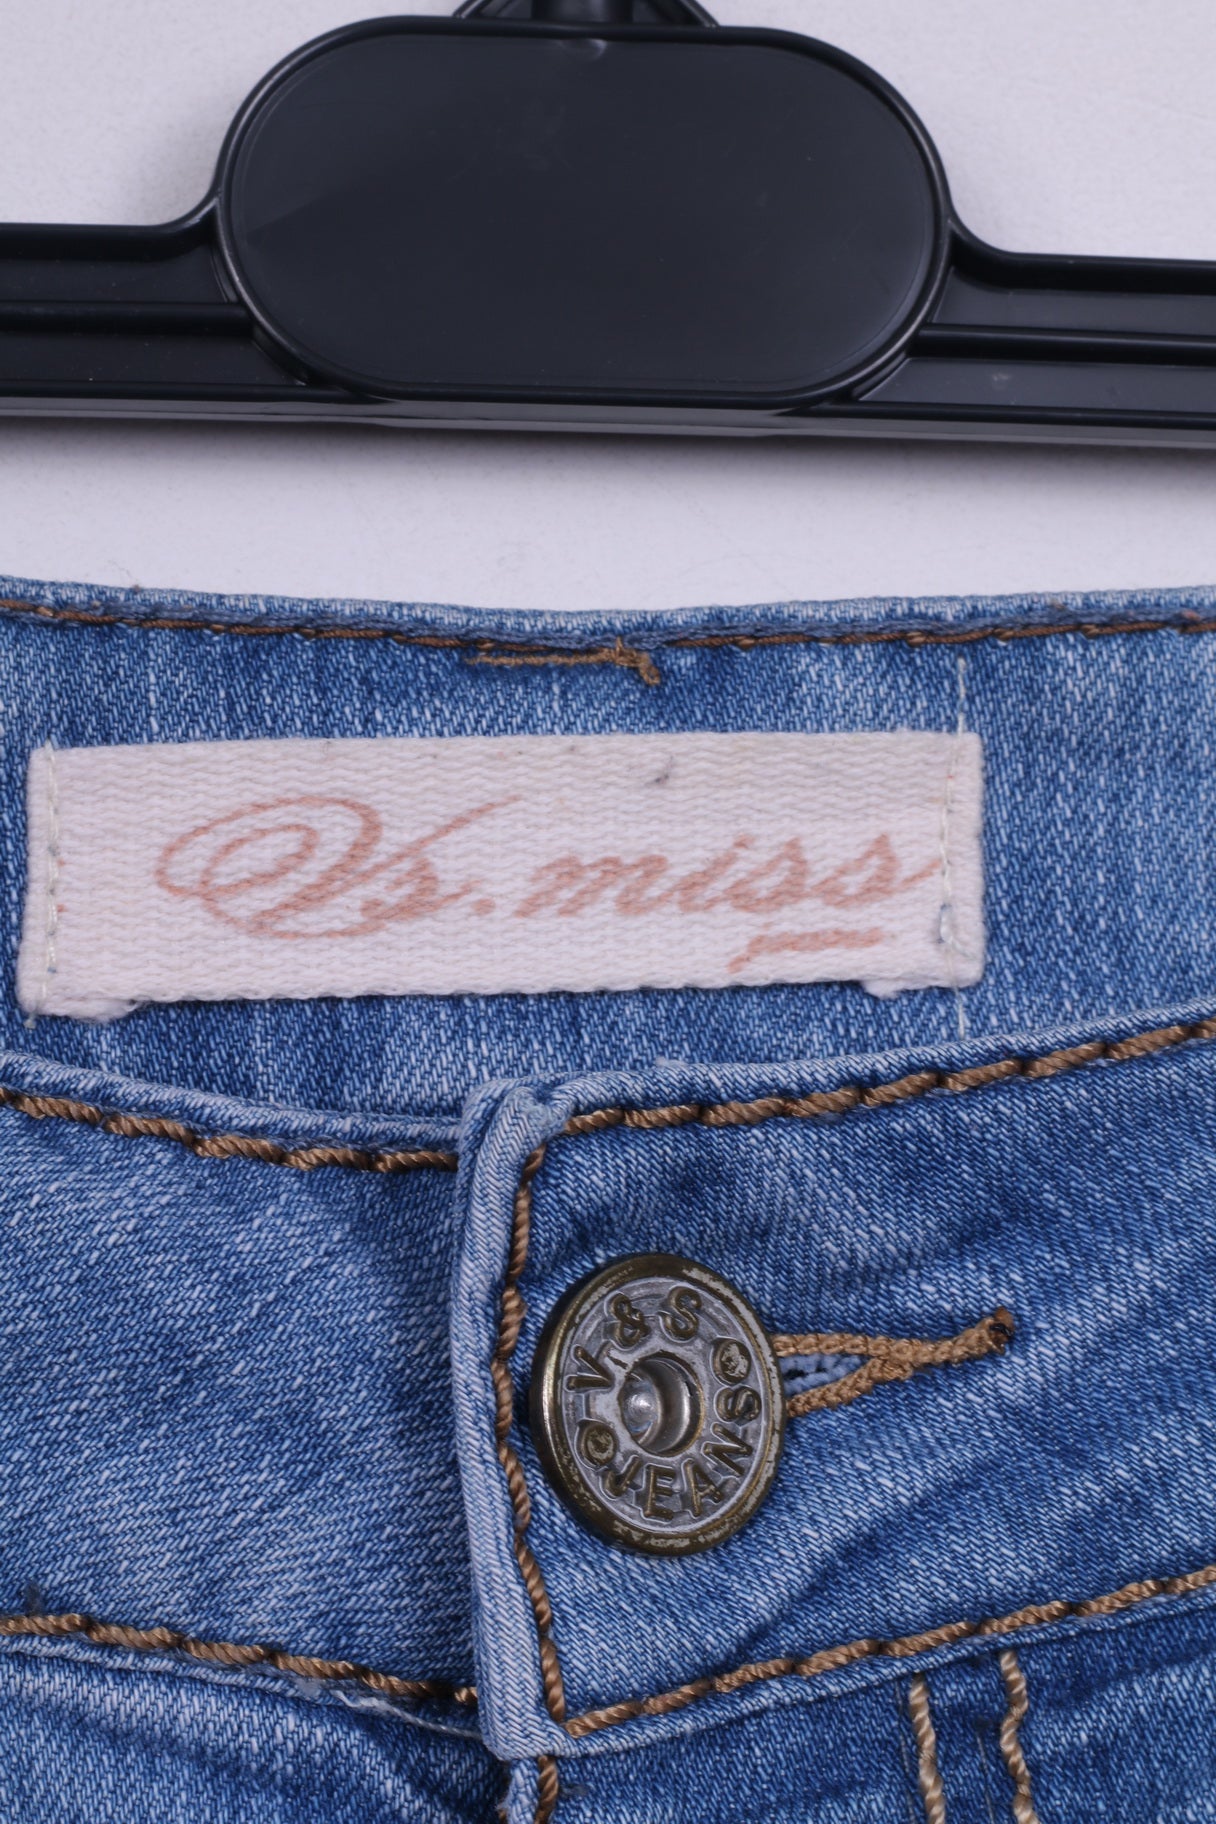 VS.Miss Femme 14 Pantalon Denim Jeans Bleu Clair Coton